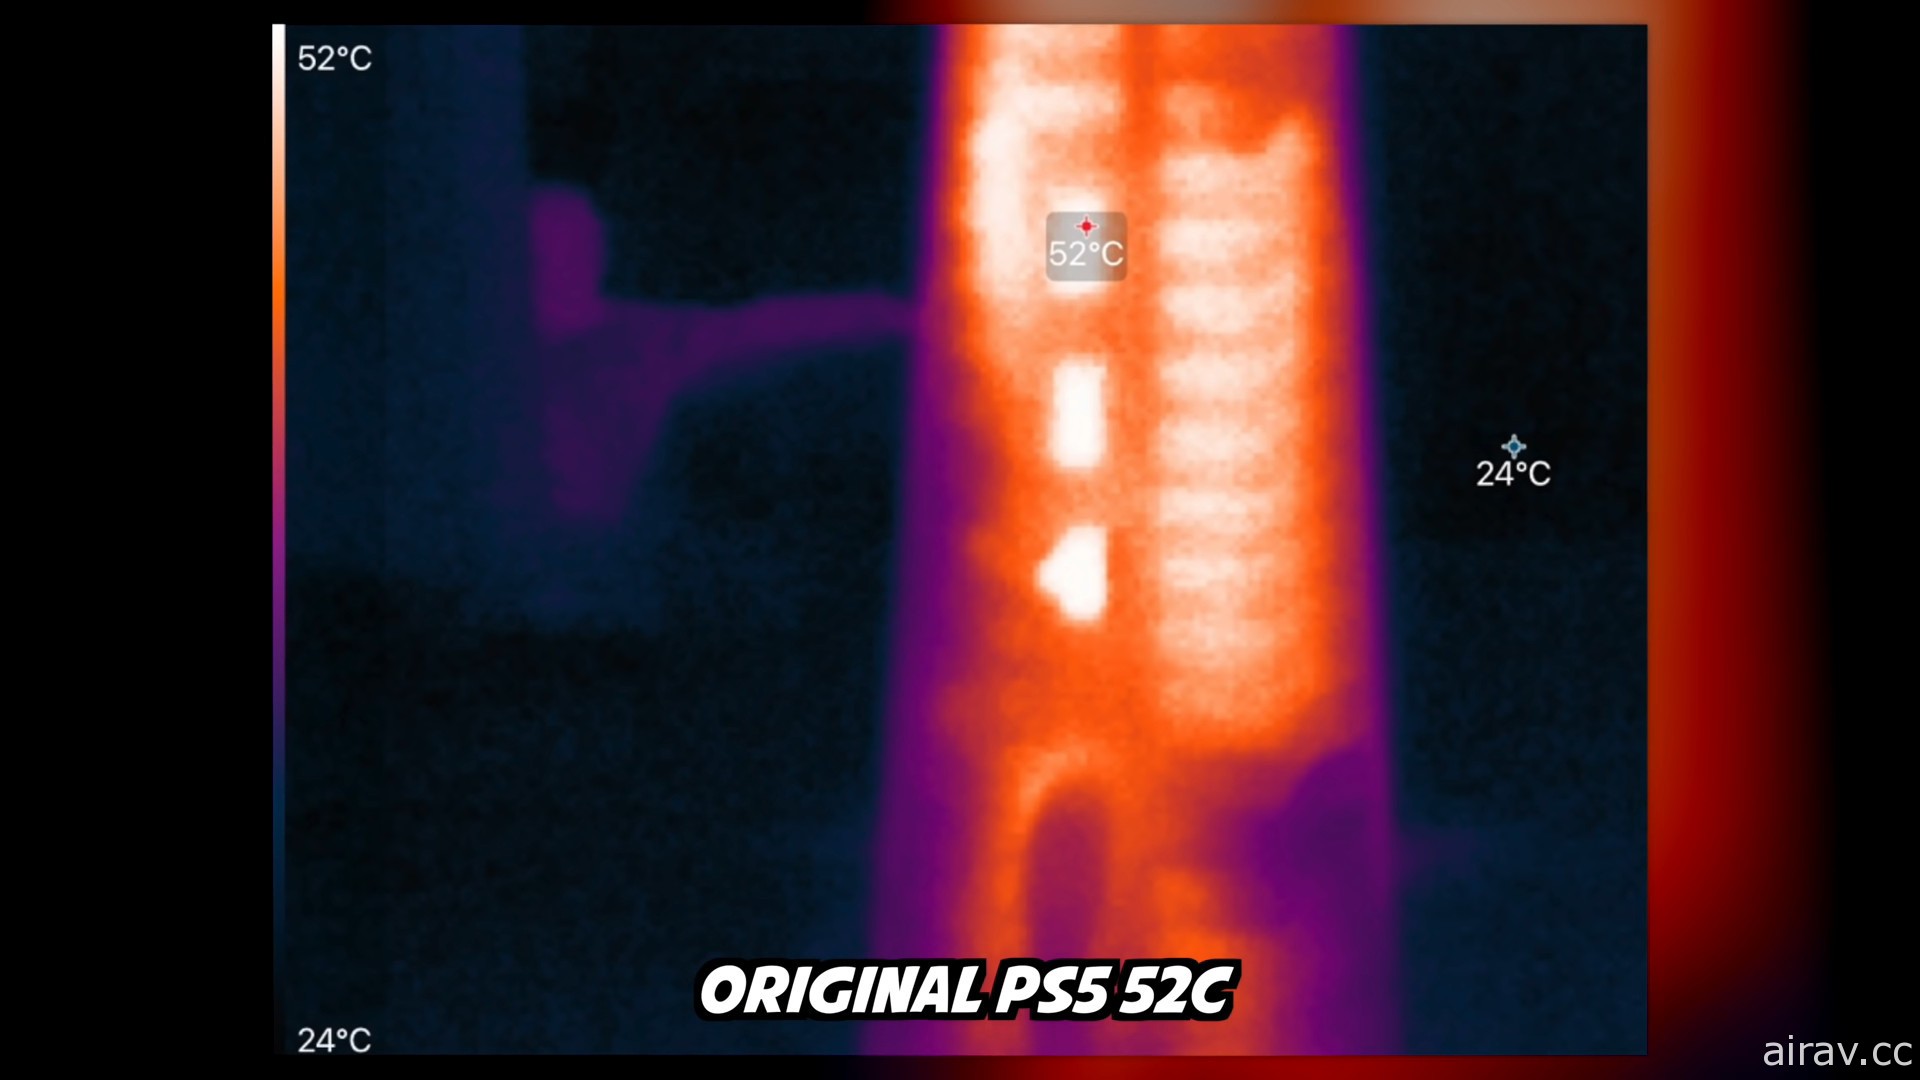 國外 YouTuber 拆機驗證新型號 PS5 主機變更點 確認散熱片尺寸明顯 「縮水」